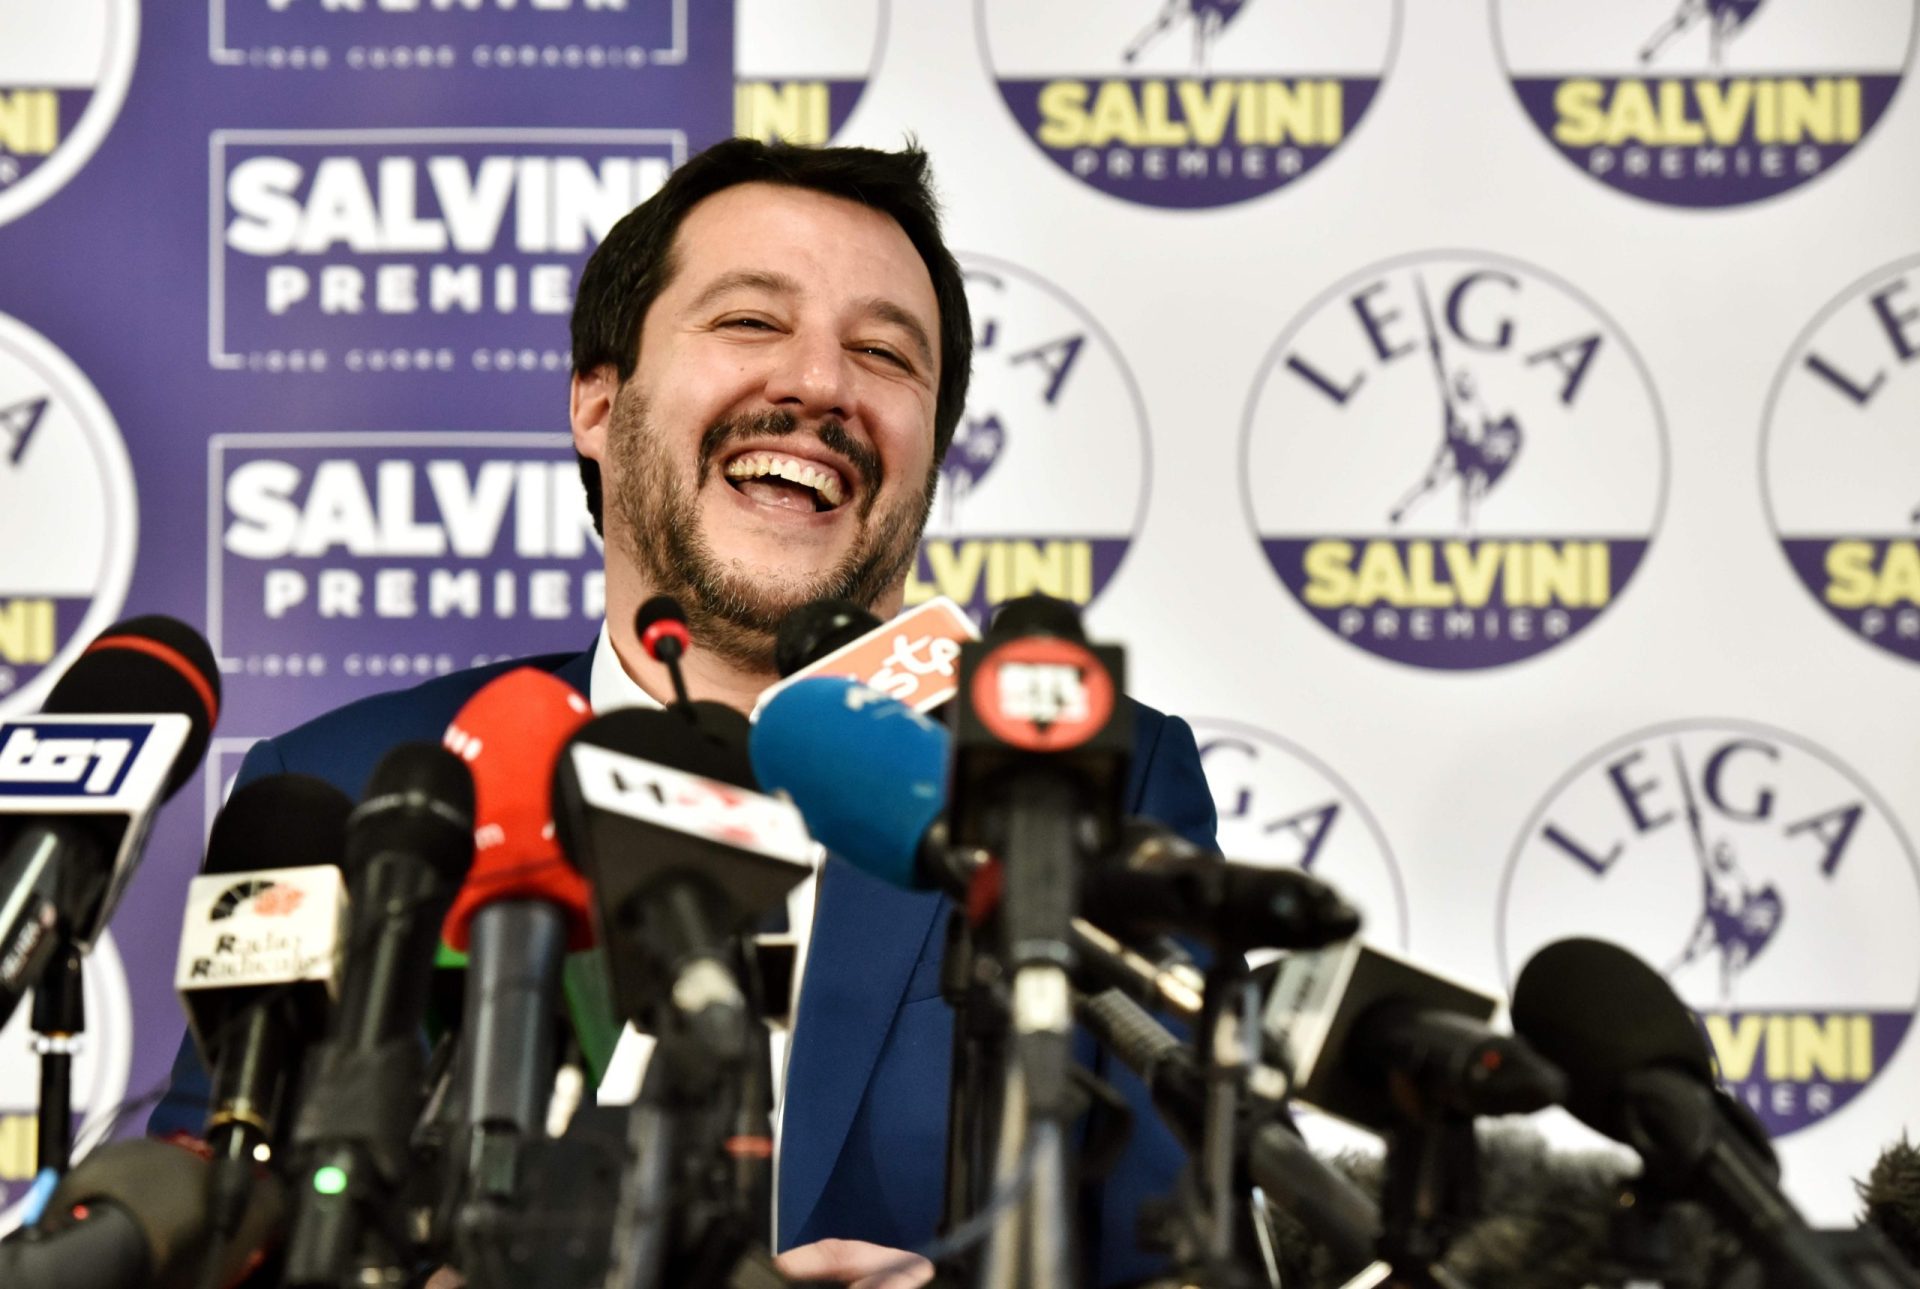 Itália. Candidato de extrema-direita reclama liderança do governo